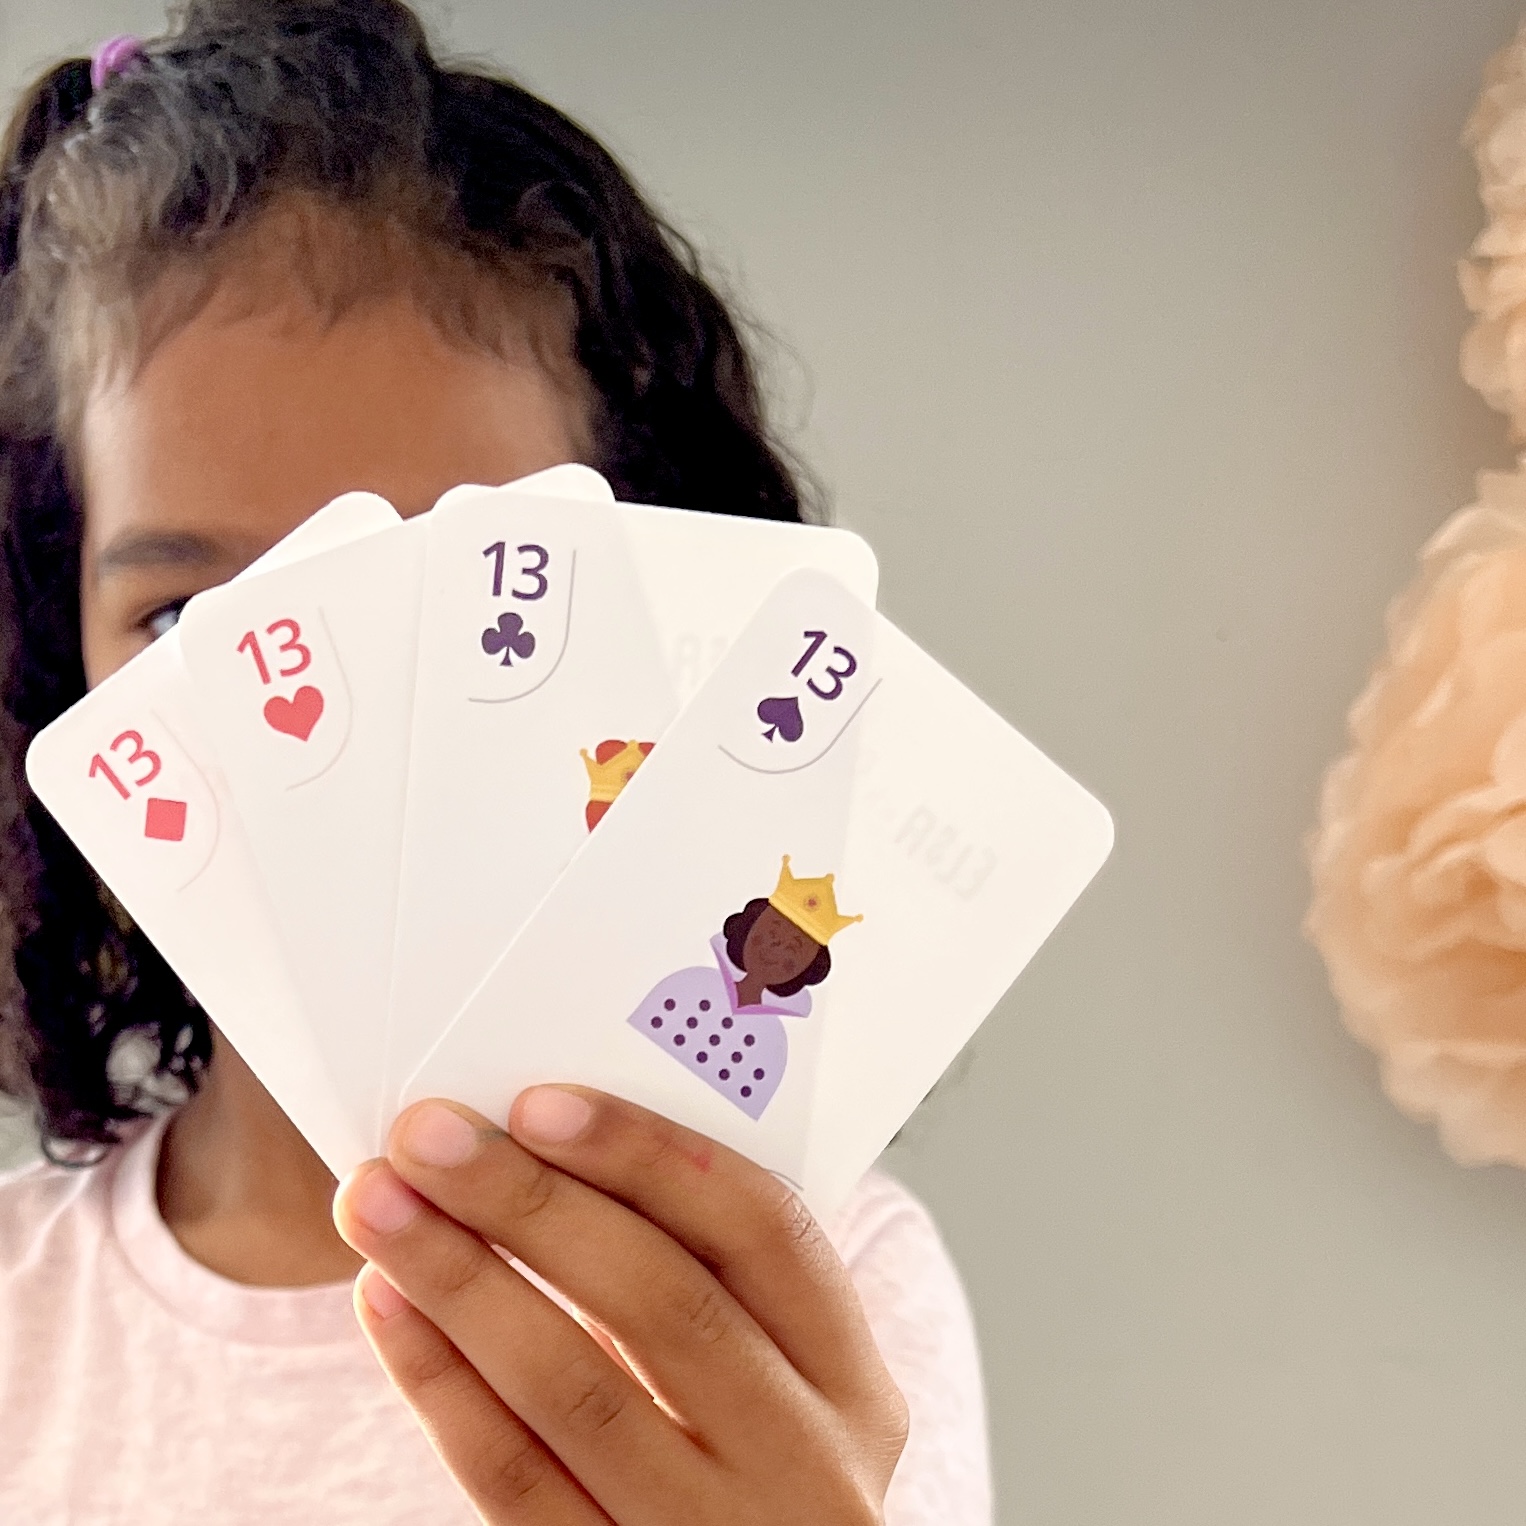 En kortlek för barn med symboler som kan räknas och matchas med kortets nummer.